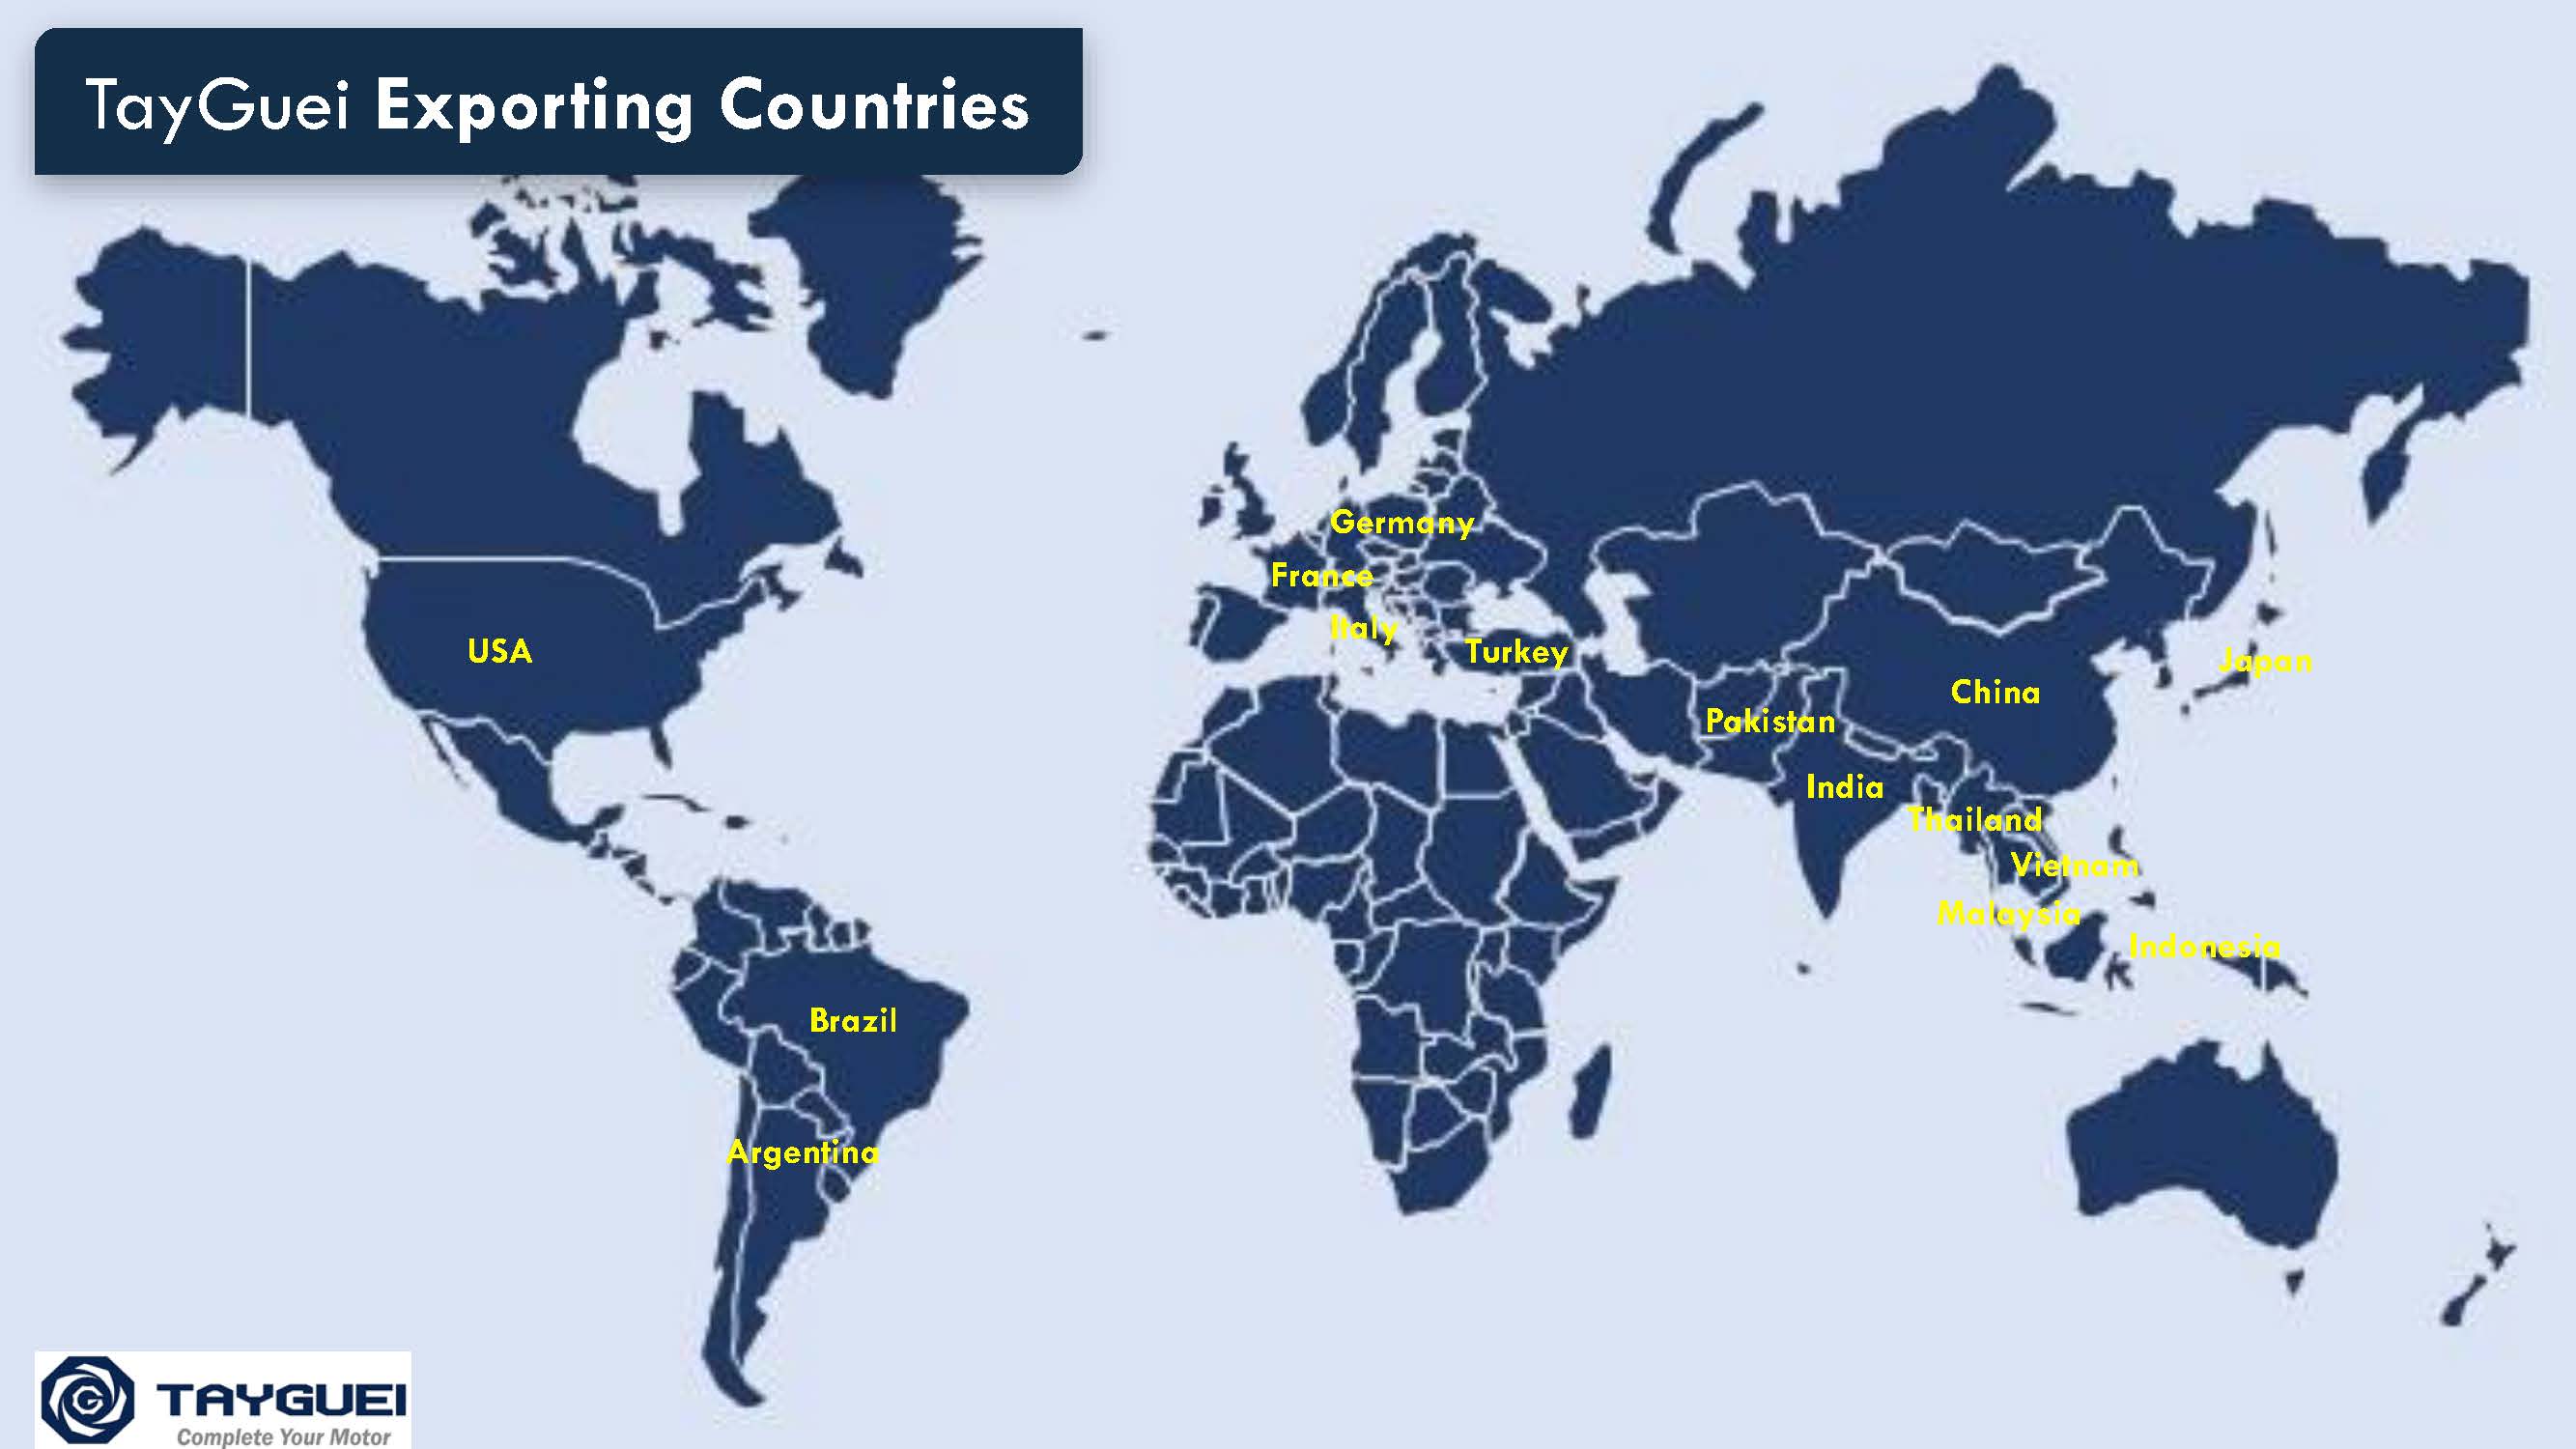 Os produtos são exportados para mais de 15 países em todo o mundo.